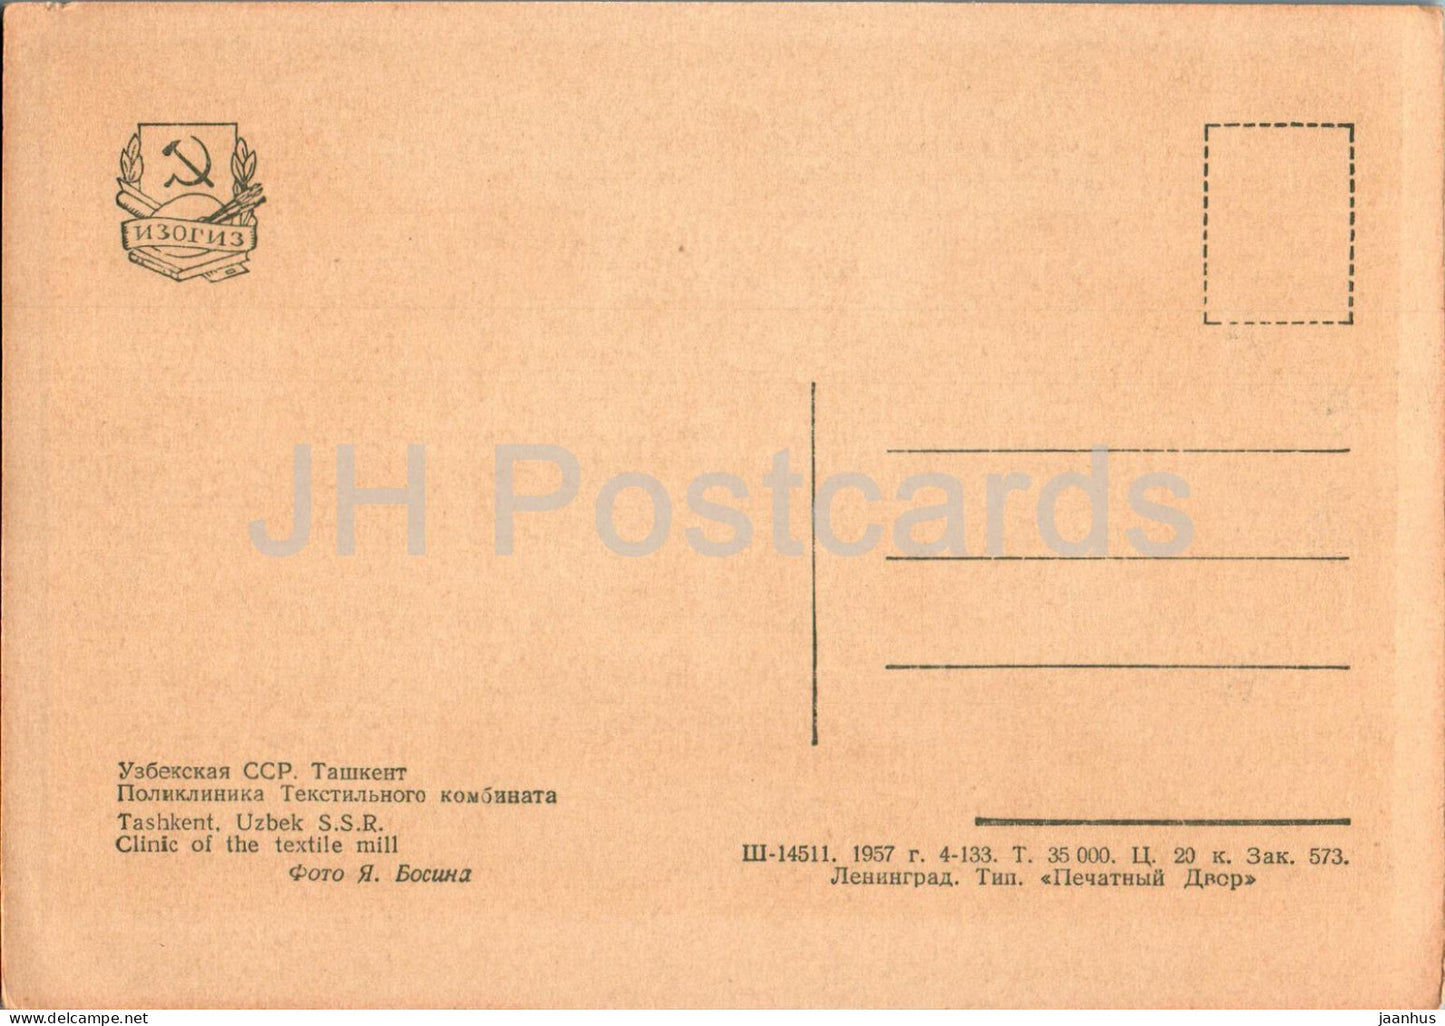 Tachkent - Clinique de l'usine textile - carte postale ancienne - 1957 - Ouzbékistan URSS - inutilisée 